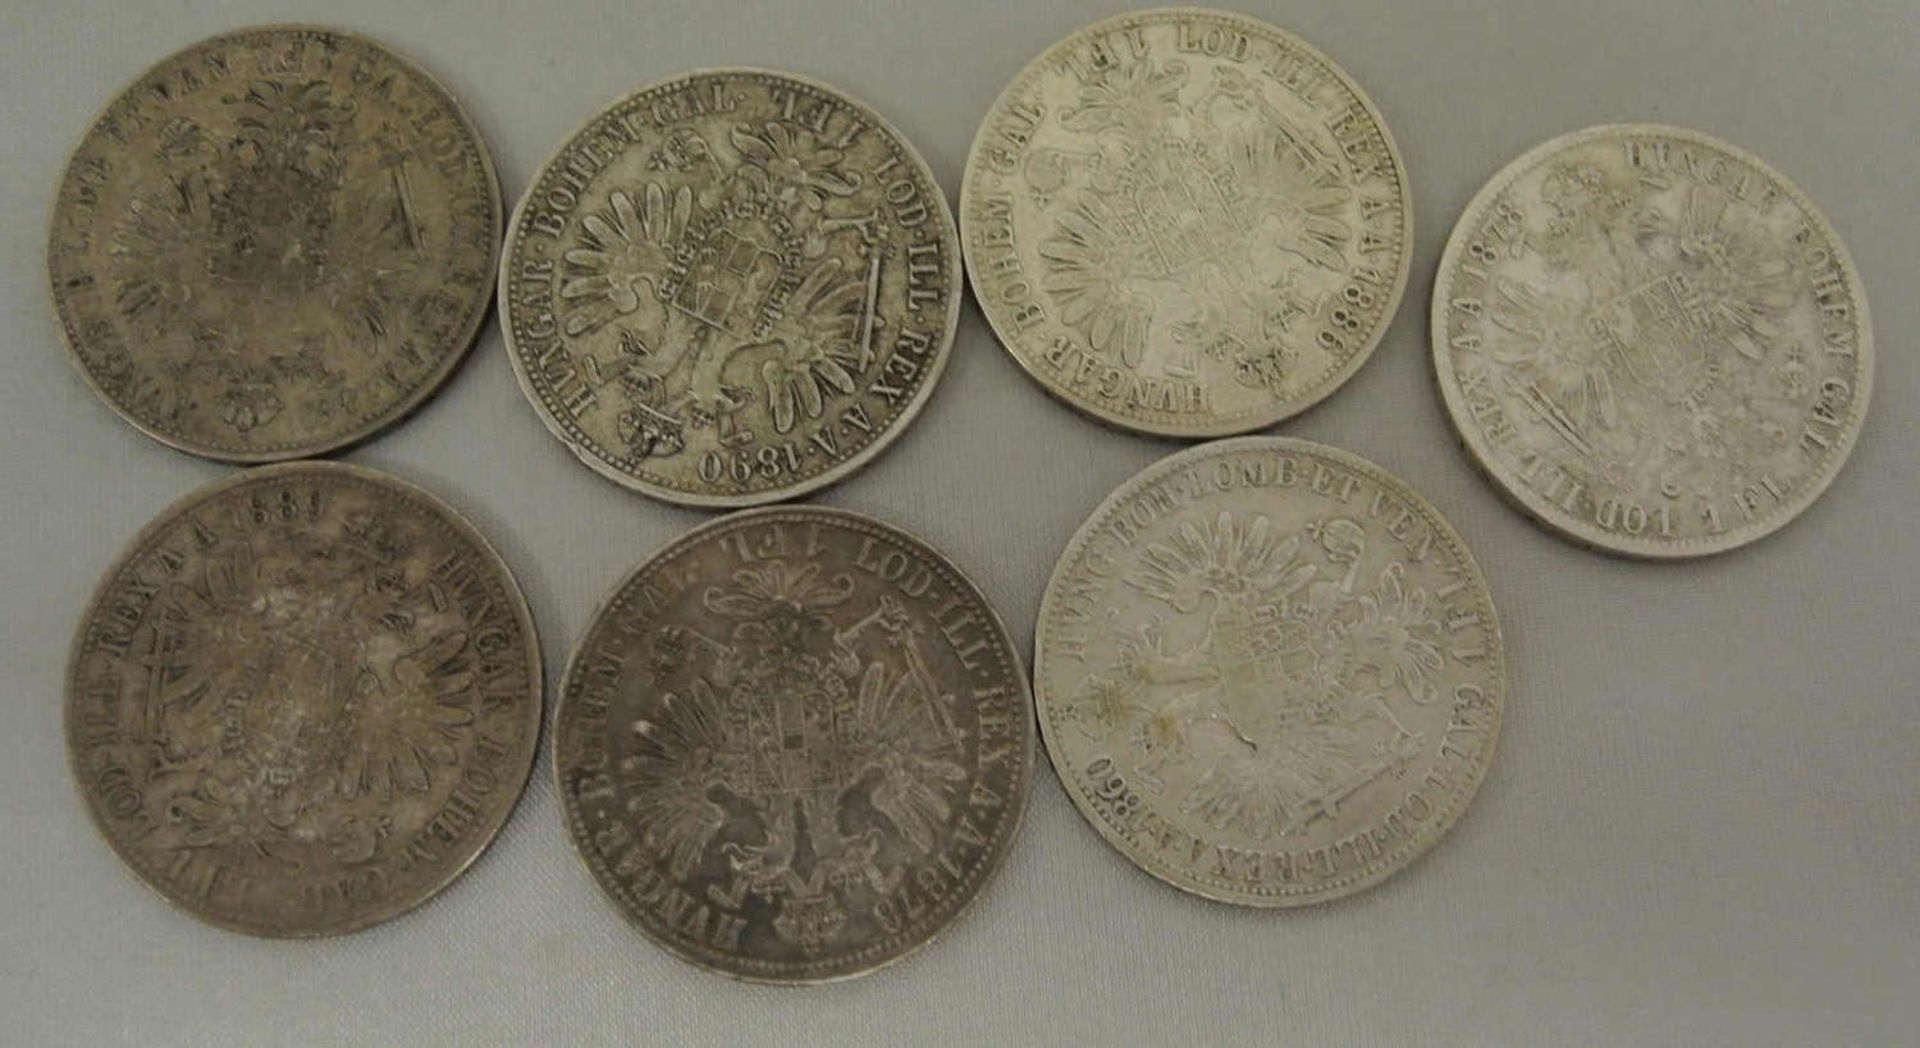 Lot Münzen Österreich, 1 Florin/Gulden insgesamt 7 Stück, dabei 1x 1860, 1x 1861, 2x 1878, 1x 1886 - Bild 2 aus 2